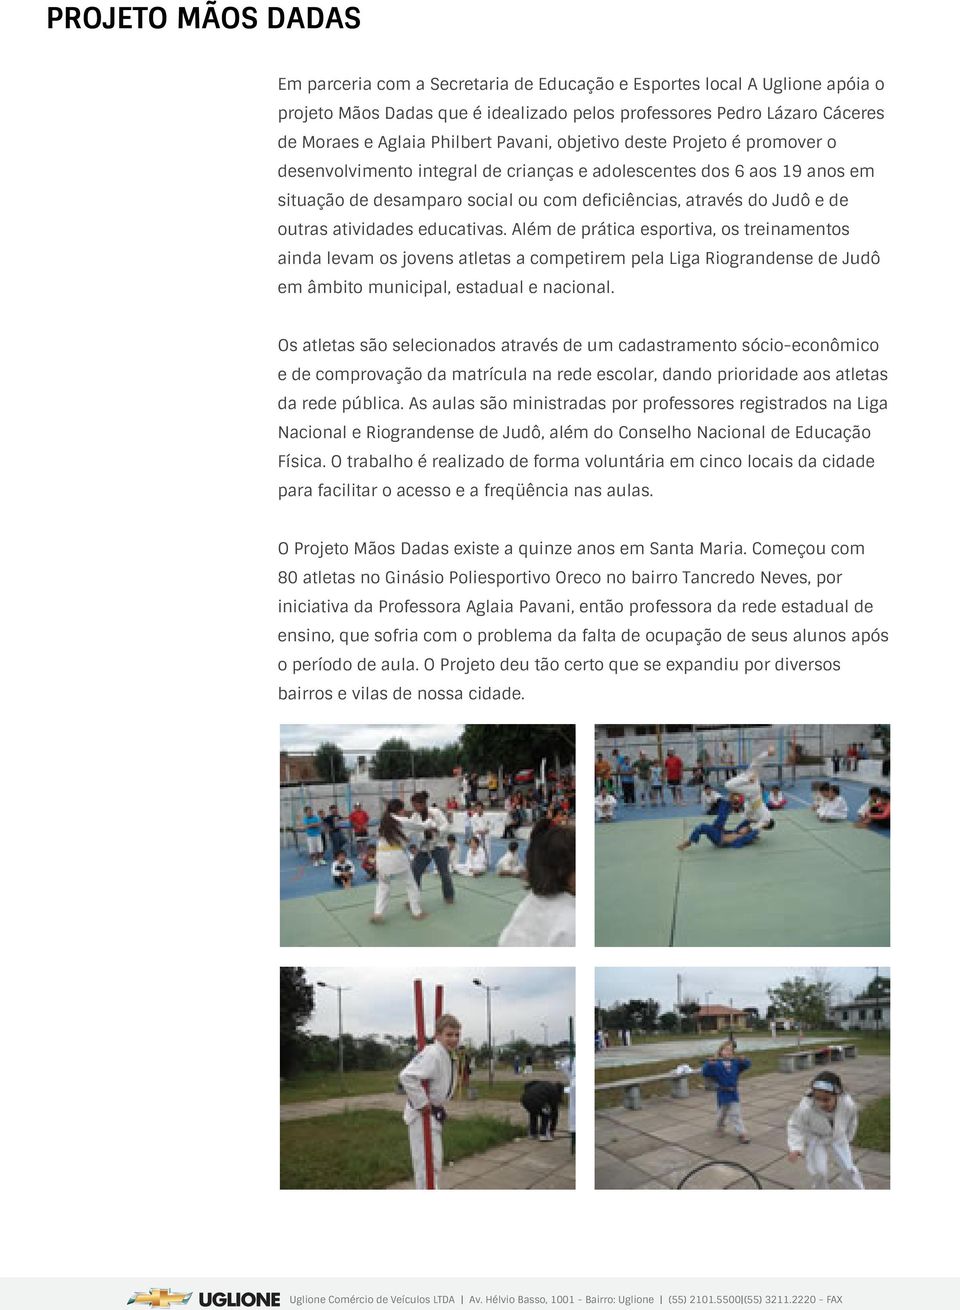 Além de prática esportiva, os treinamentos ainda levam os jovens atletas a competirem pela Liga Riograndense de Judô em âmbito municipal, estadual e nacional.